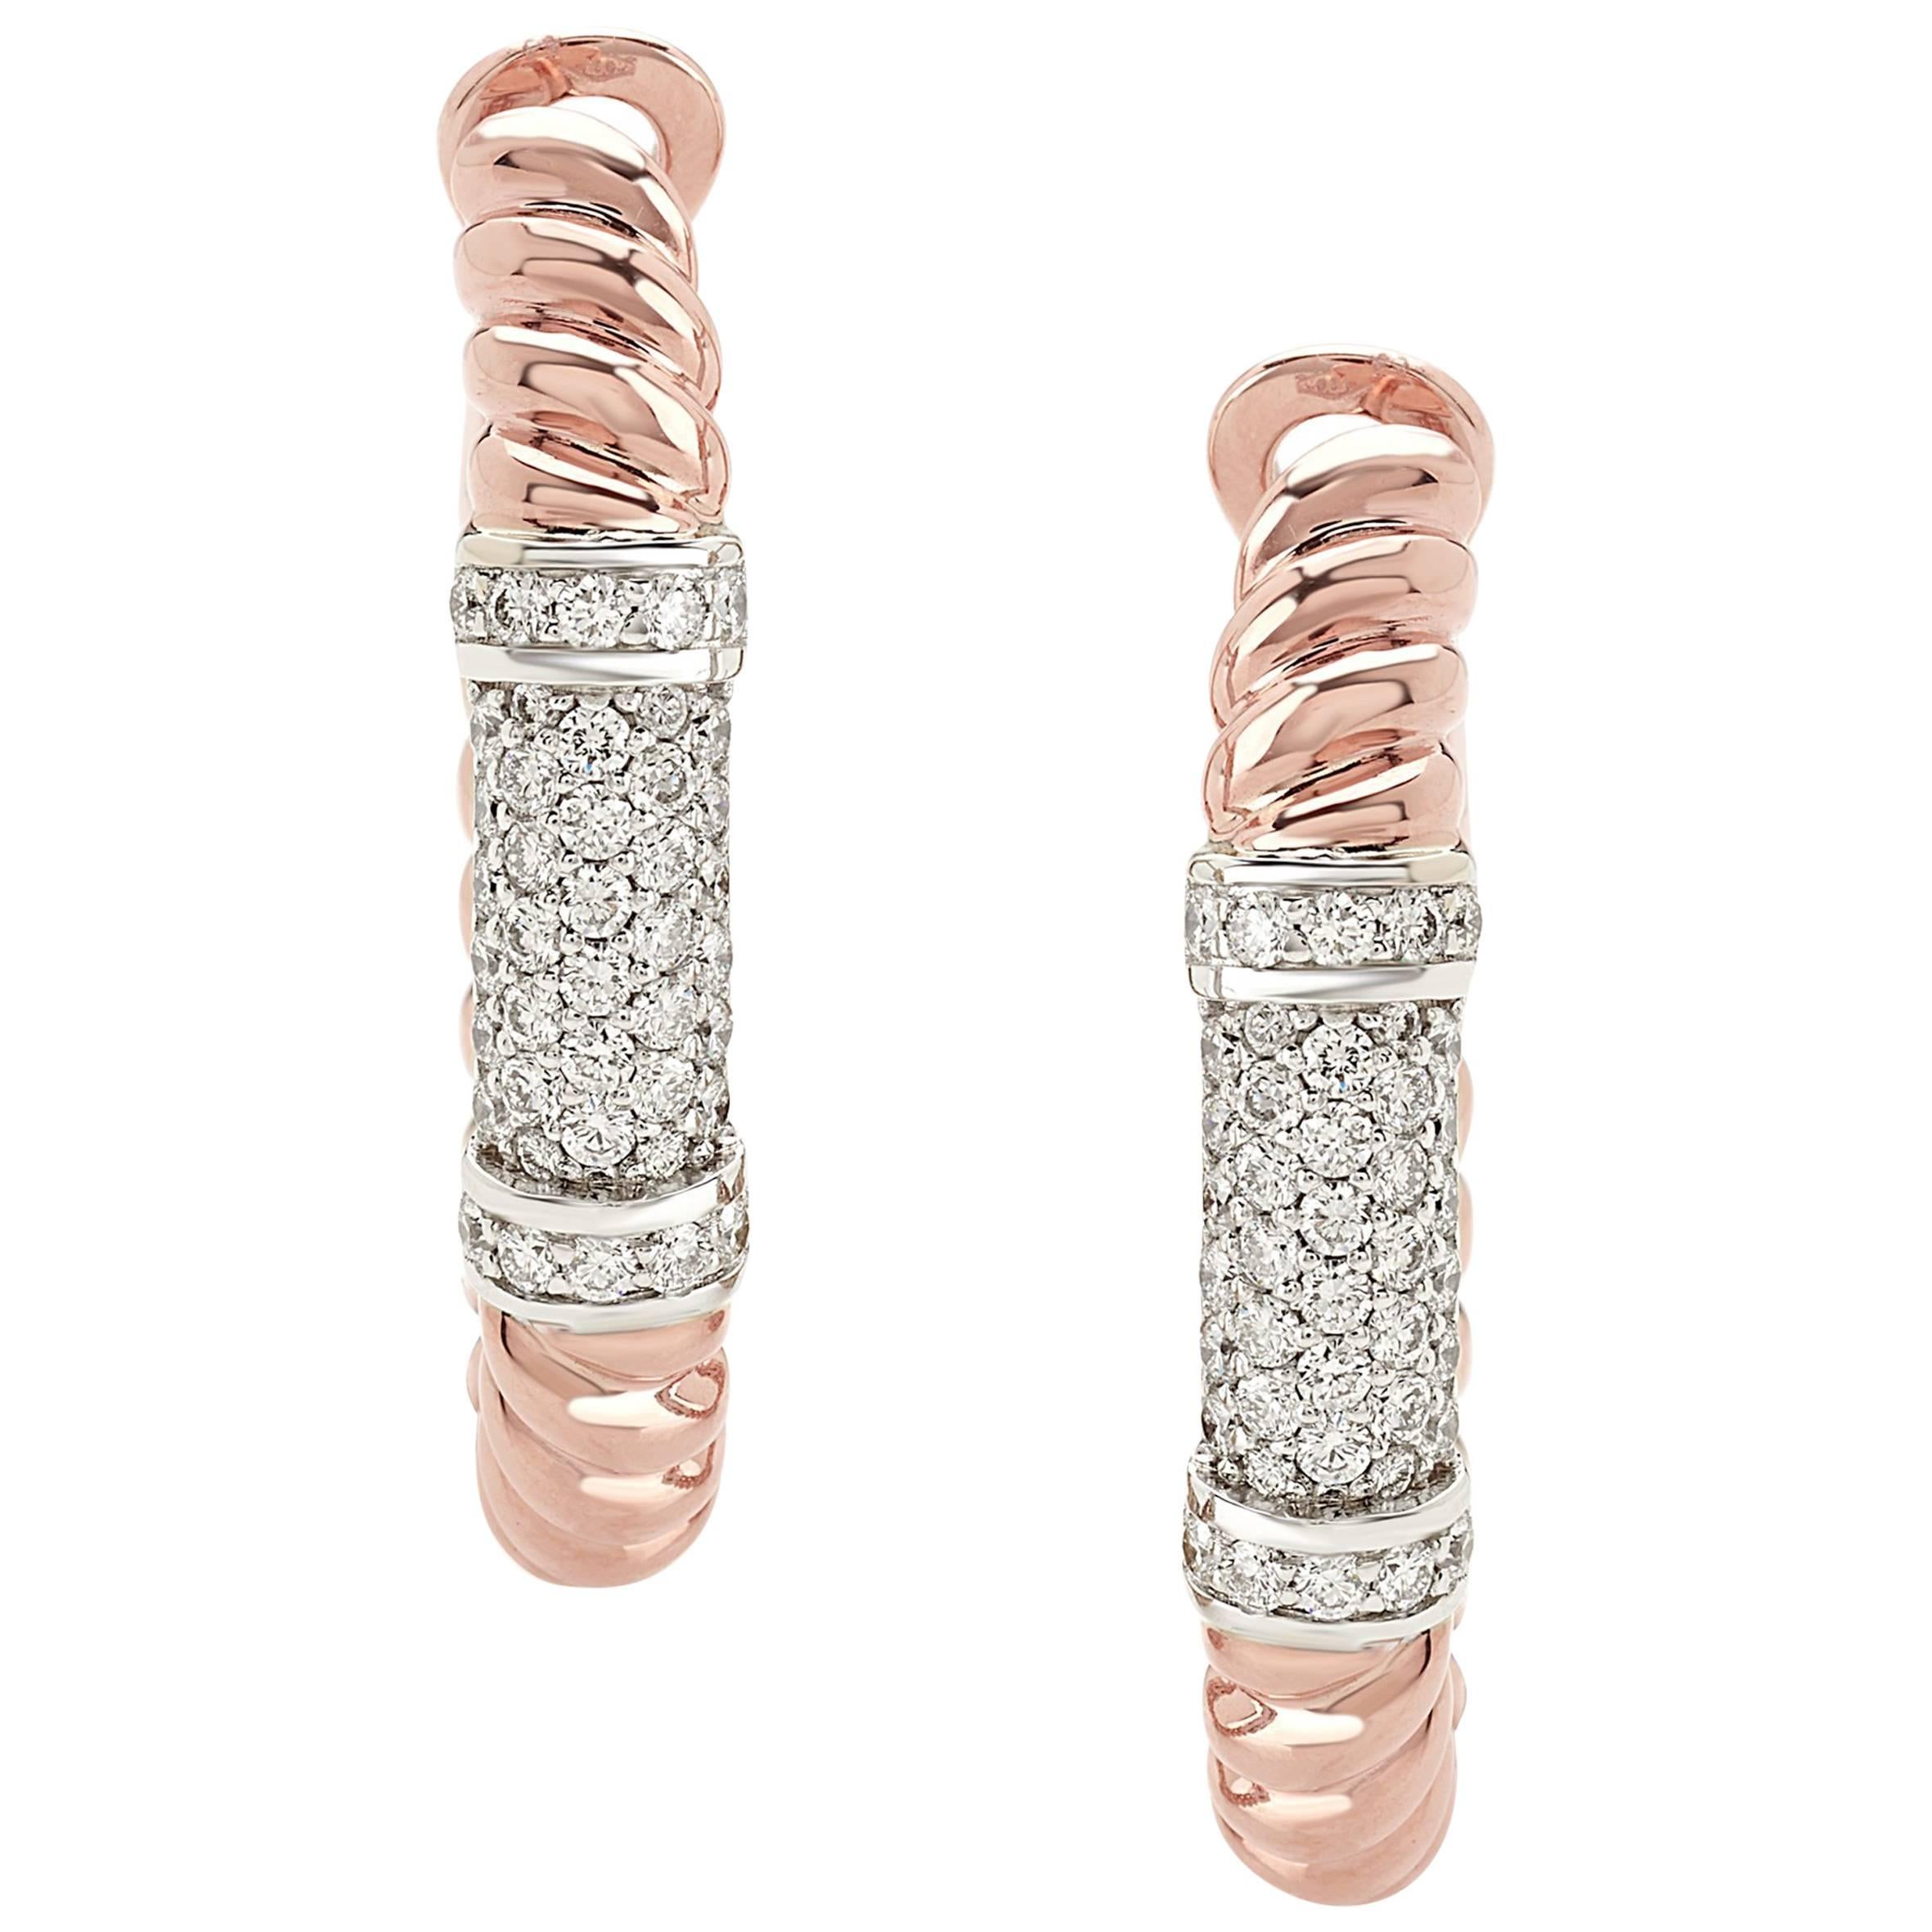 Paar Ohrringe aus der Kollektion "Rope" aus 18 Karat Roségold und Diamanten